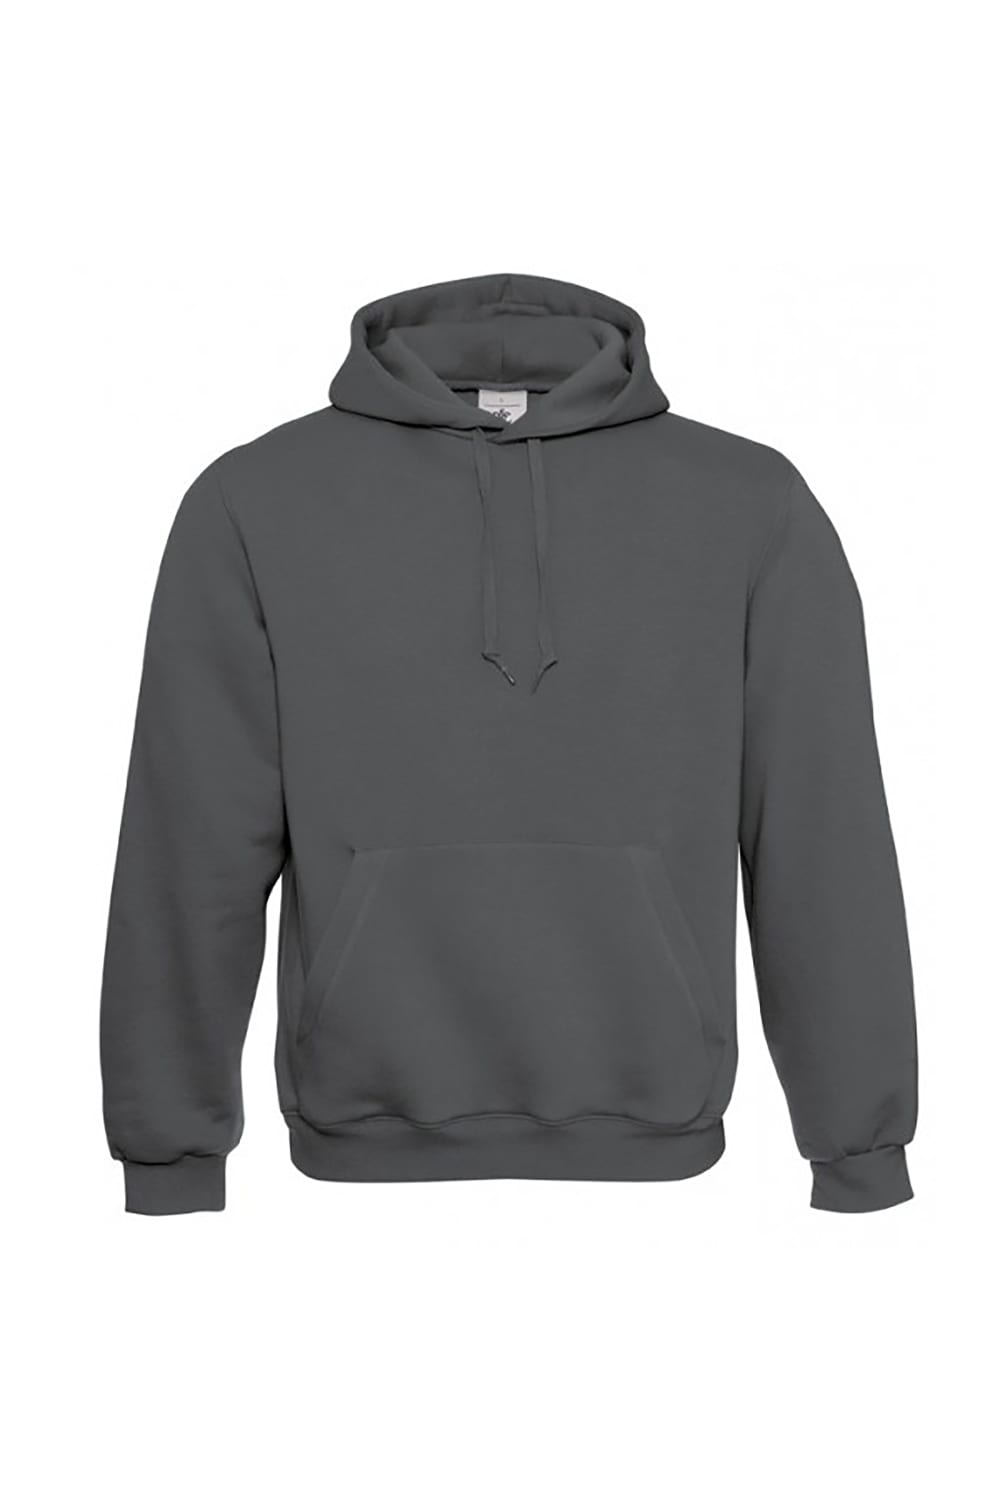 B&C Mens Hooded Sweatshirt / Mens Sweatshirts & Hoodies (Steel Gray)